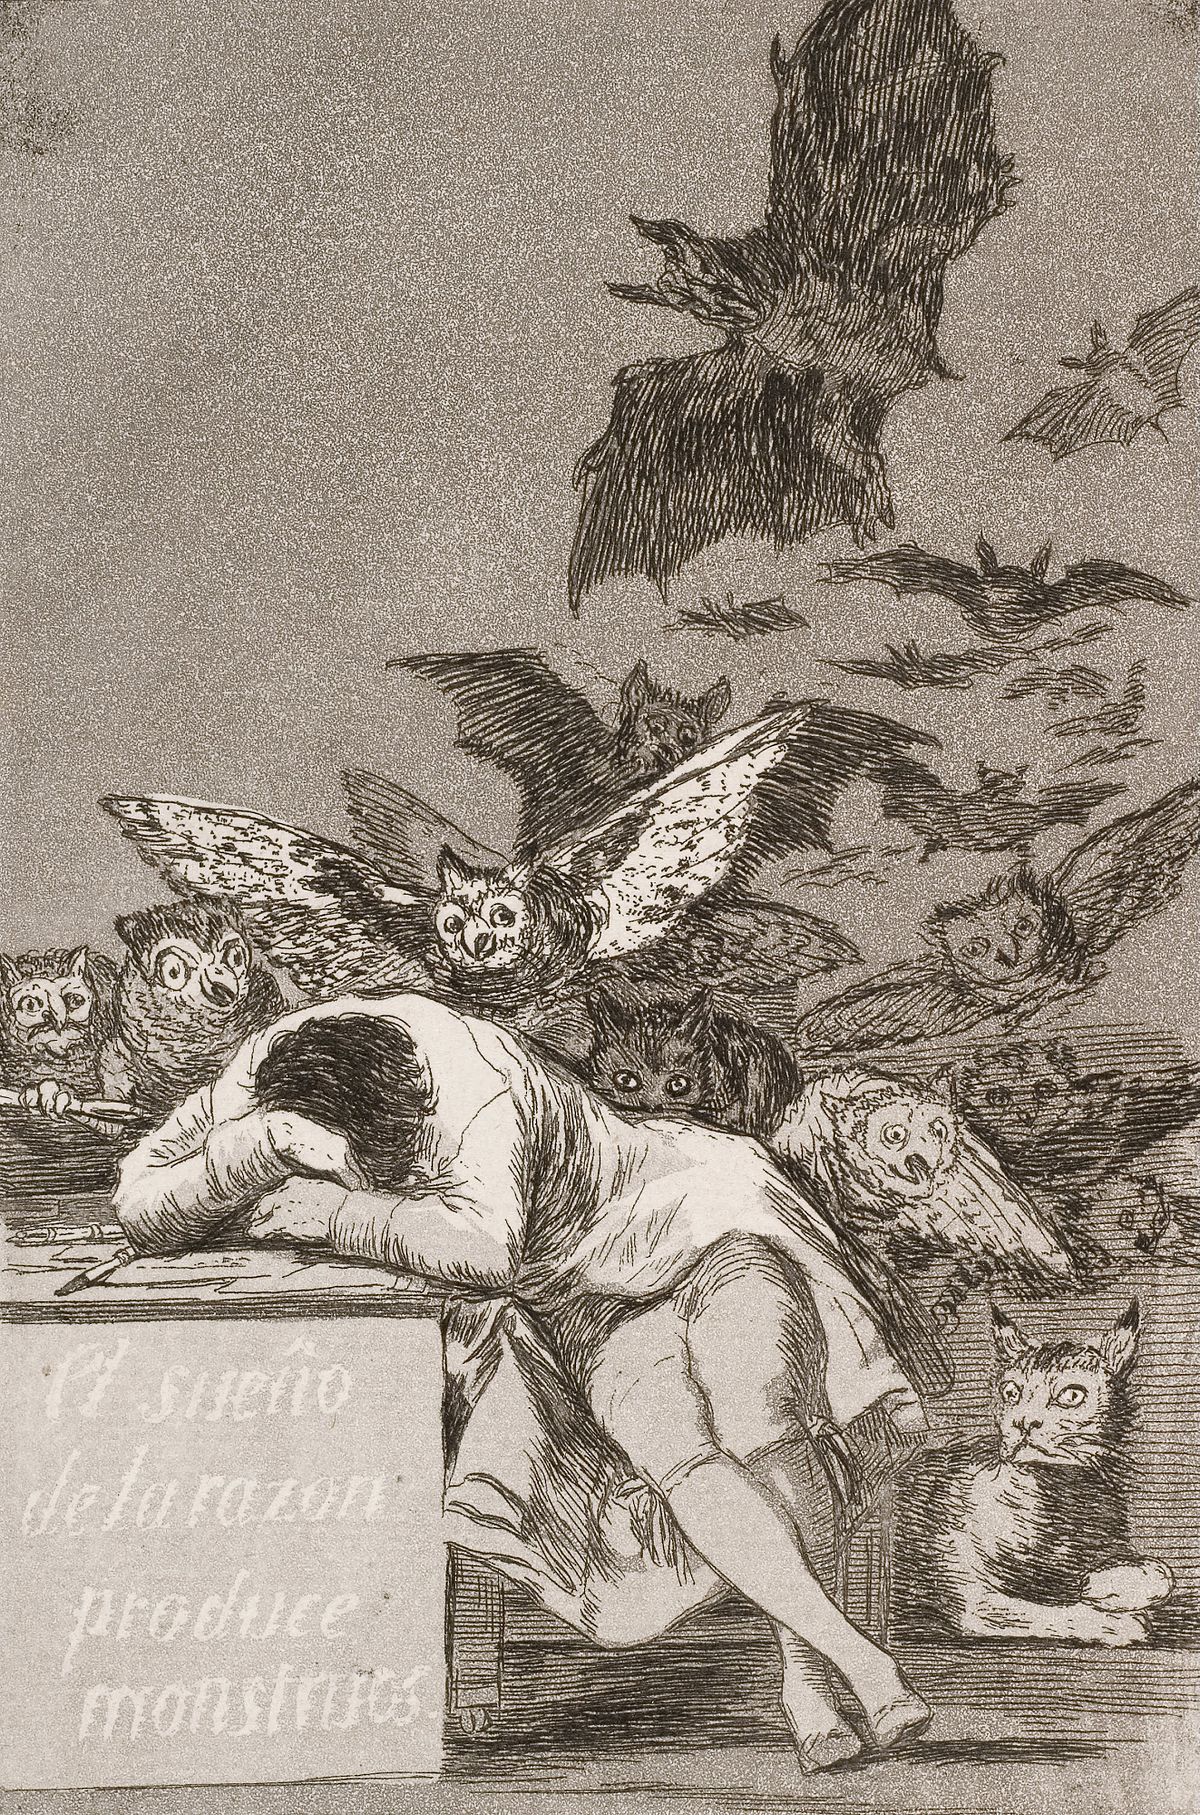 Sen rozumu płodzi potwory by Francisco Goya - 1799 - 21.6 x 15.2 cm 